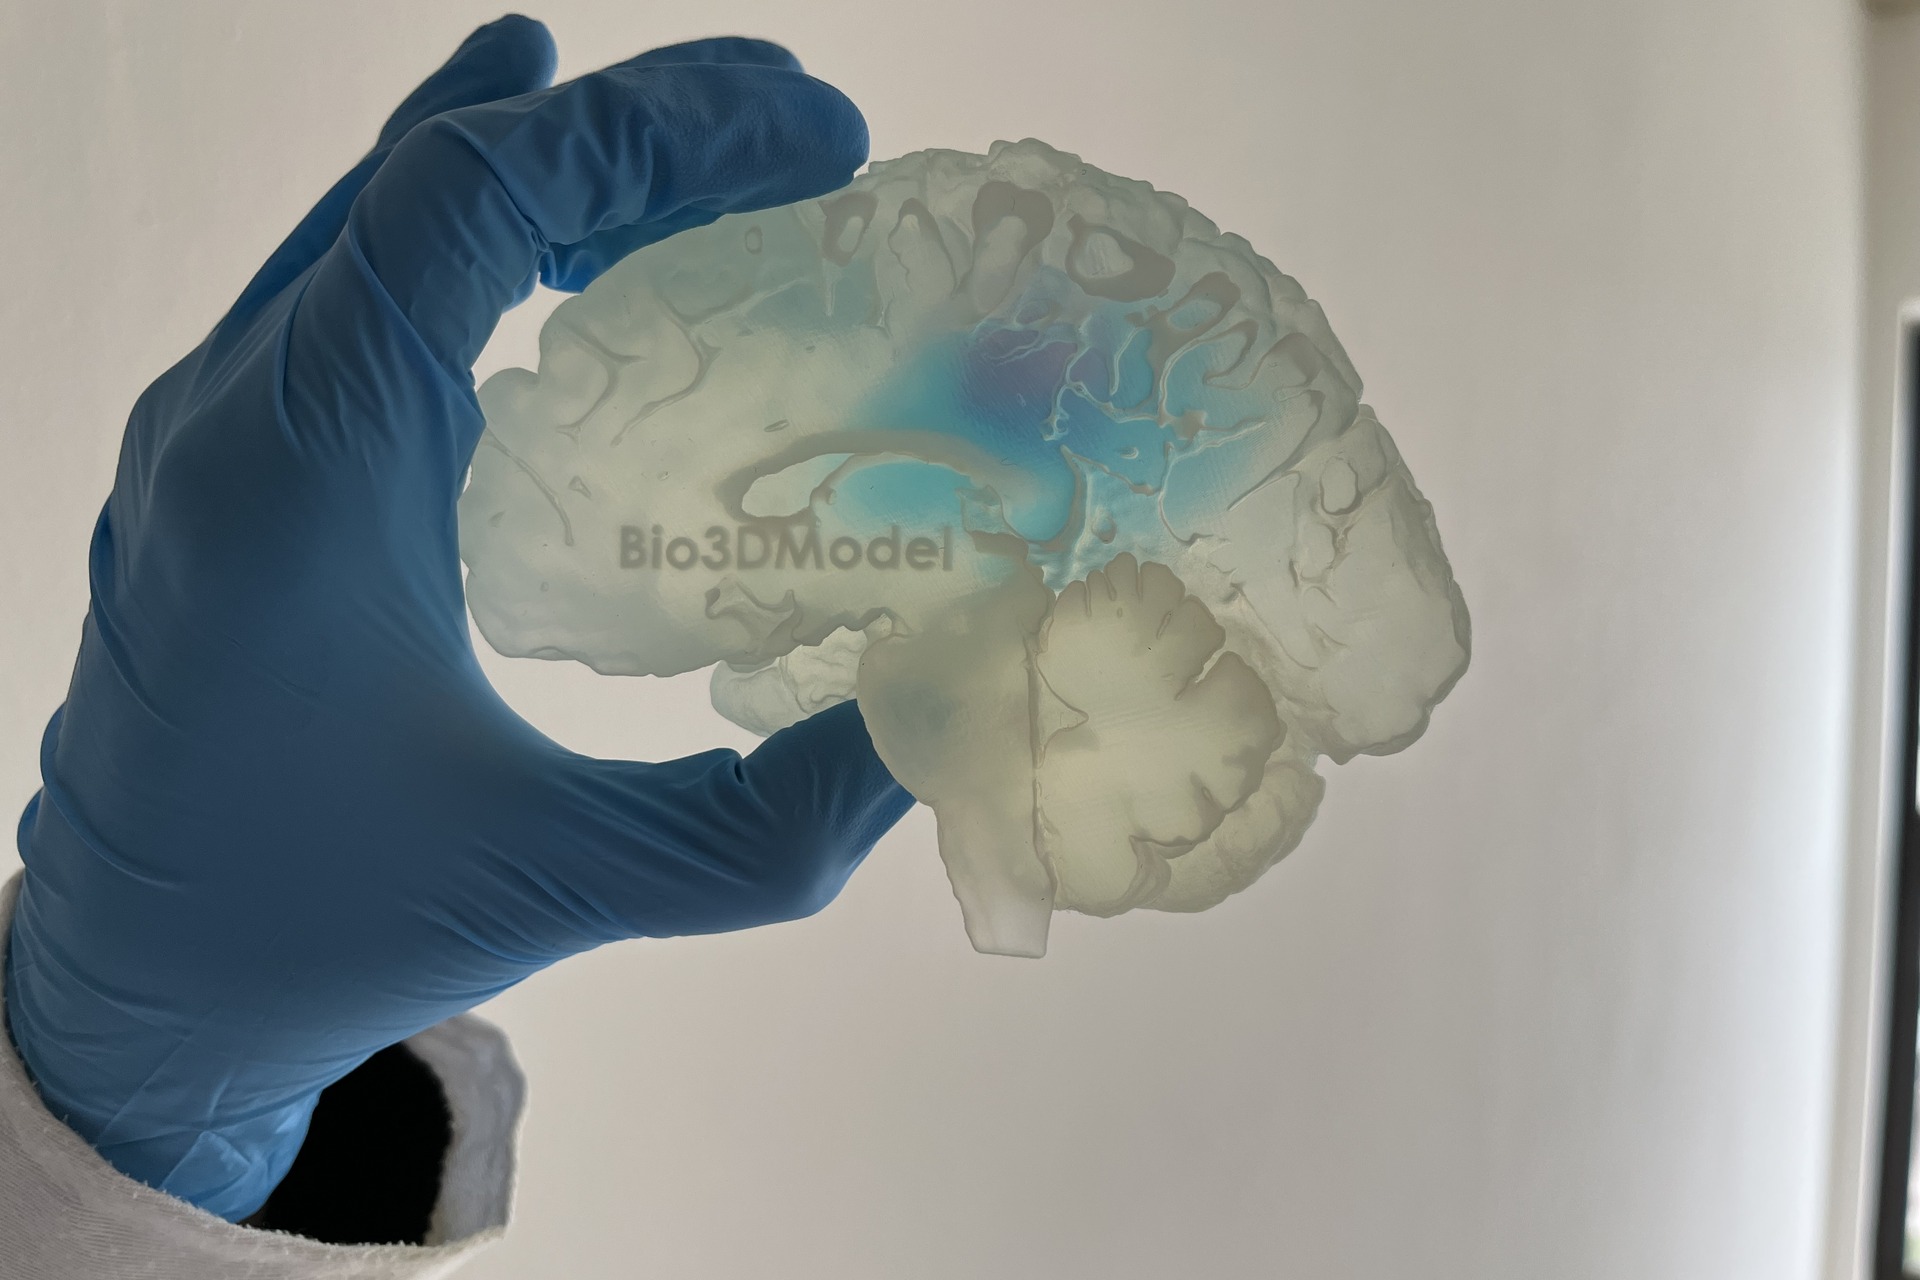 ადამიანის ტვინი: მეტასტაზებით დაზარალებული ტვინის რეპროდუქცია და დაბეჭდილი 3D-ში იტალიური კომპანია Bio3DMModel-ის მიერ.